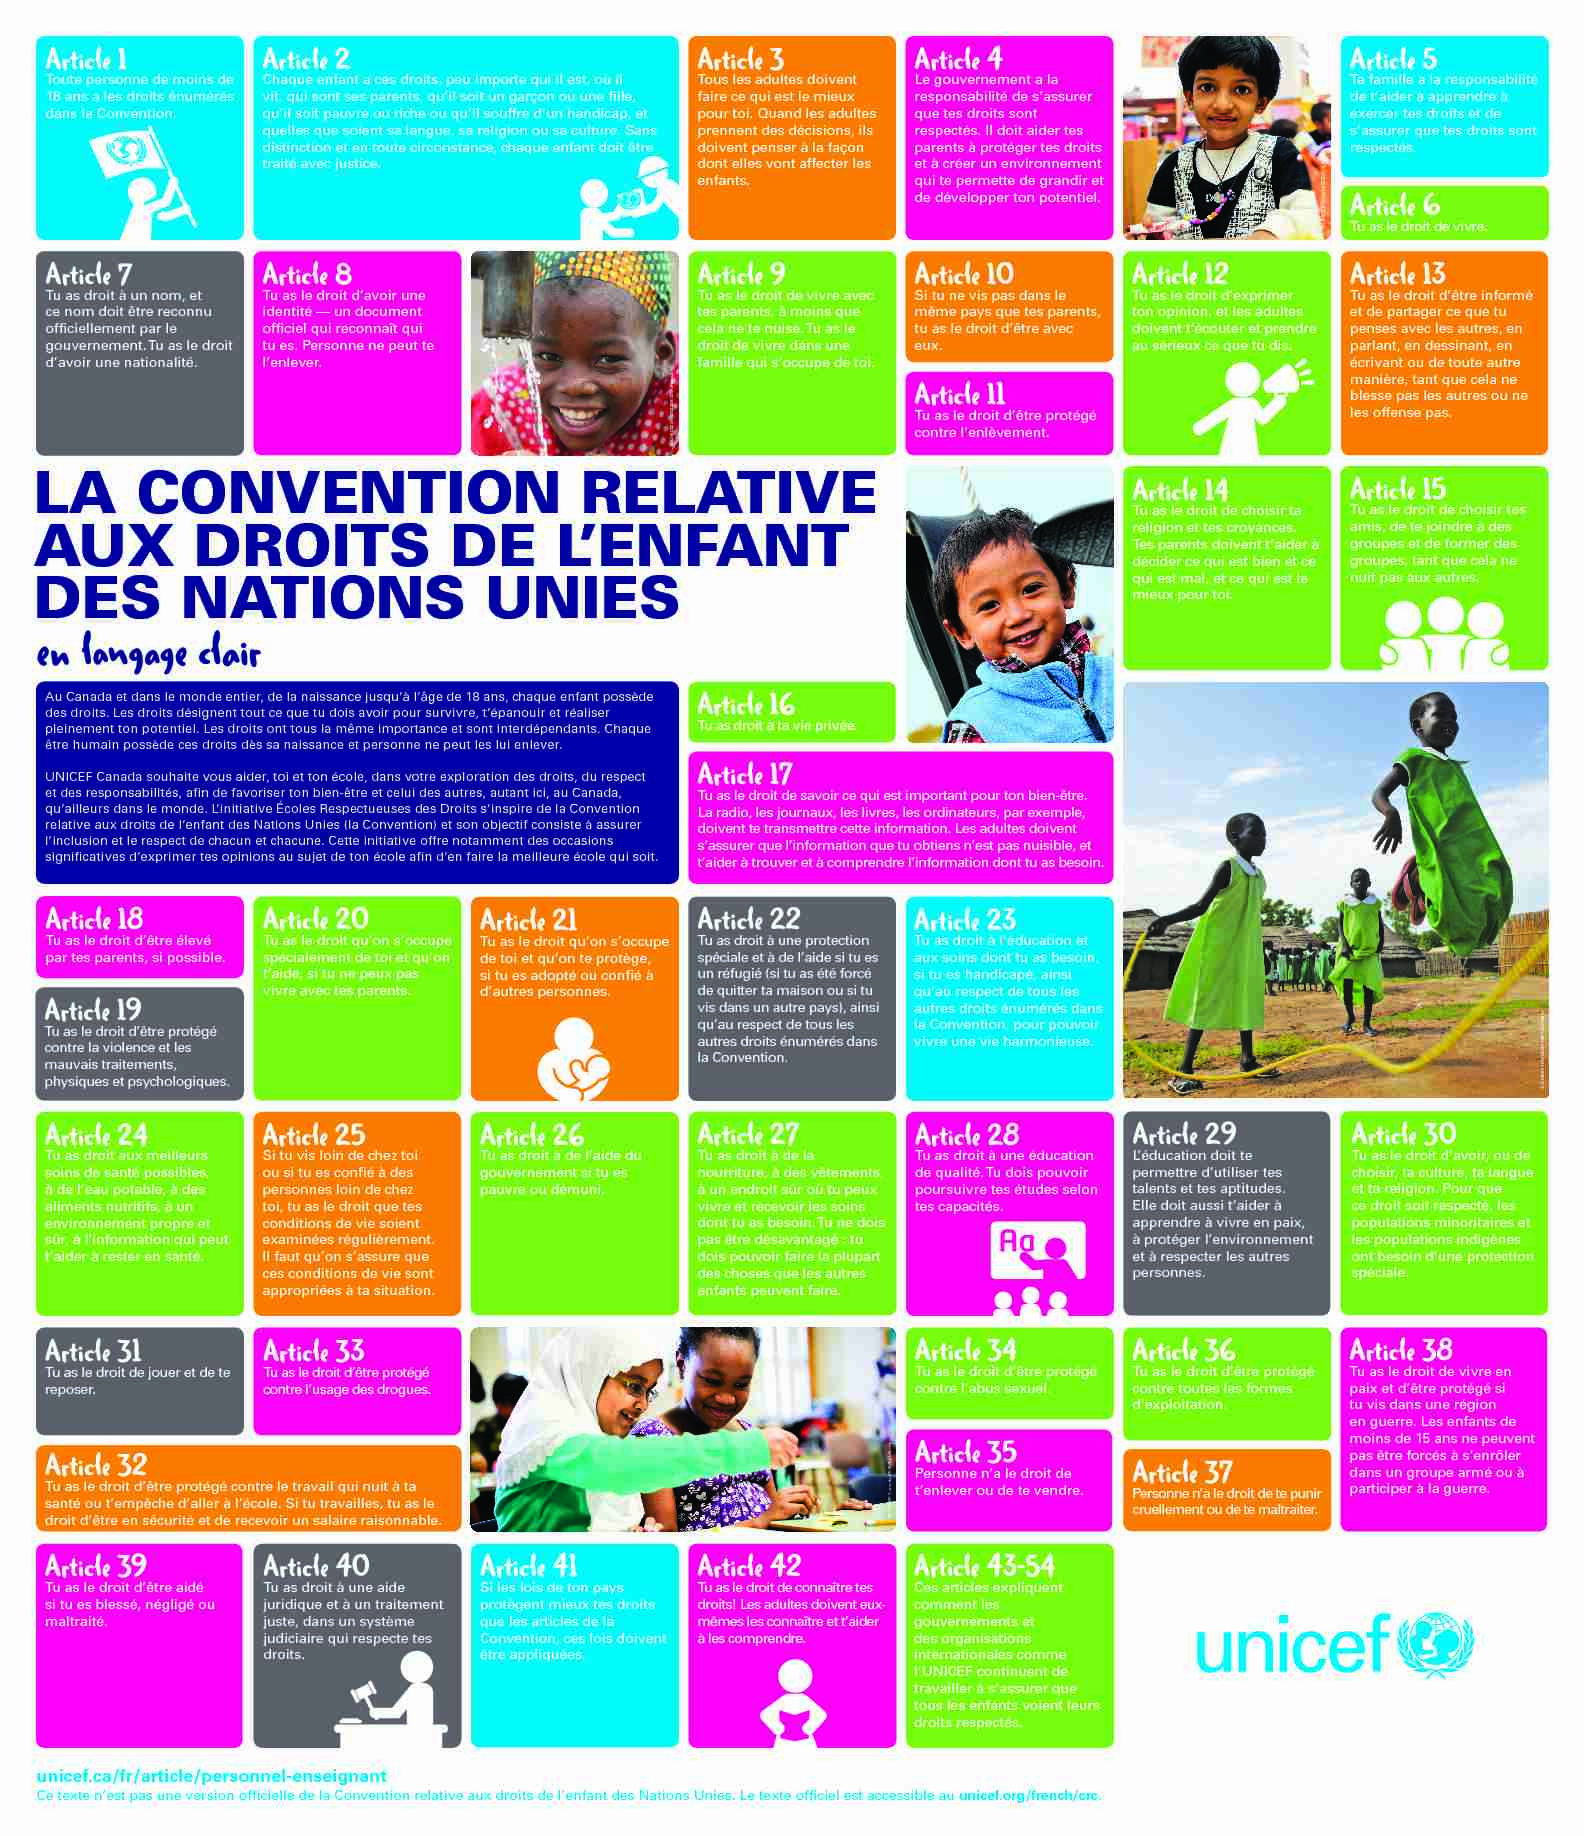 LA CONVENTION RELATIVE AUX DROITS DE L’ENFANT DES NATIONS UNIES